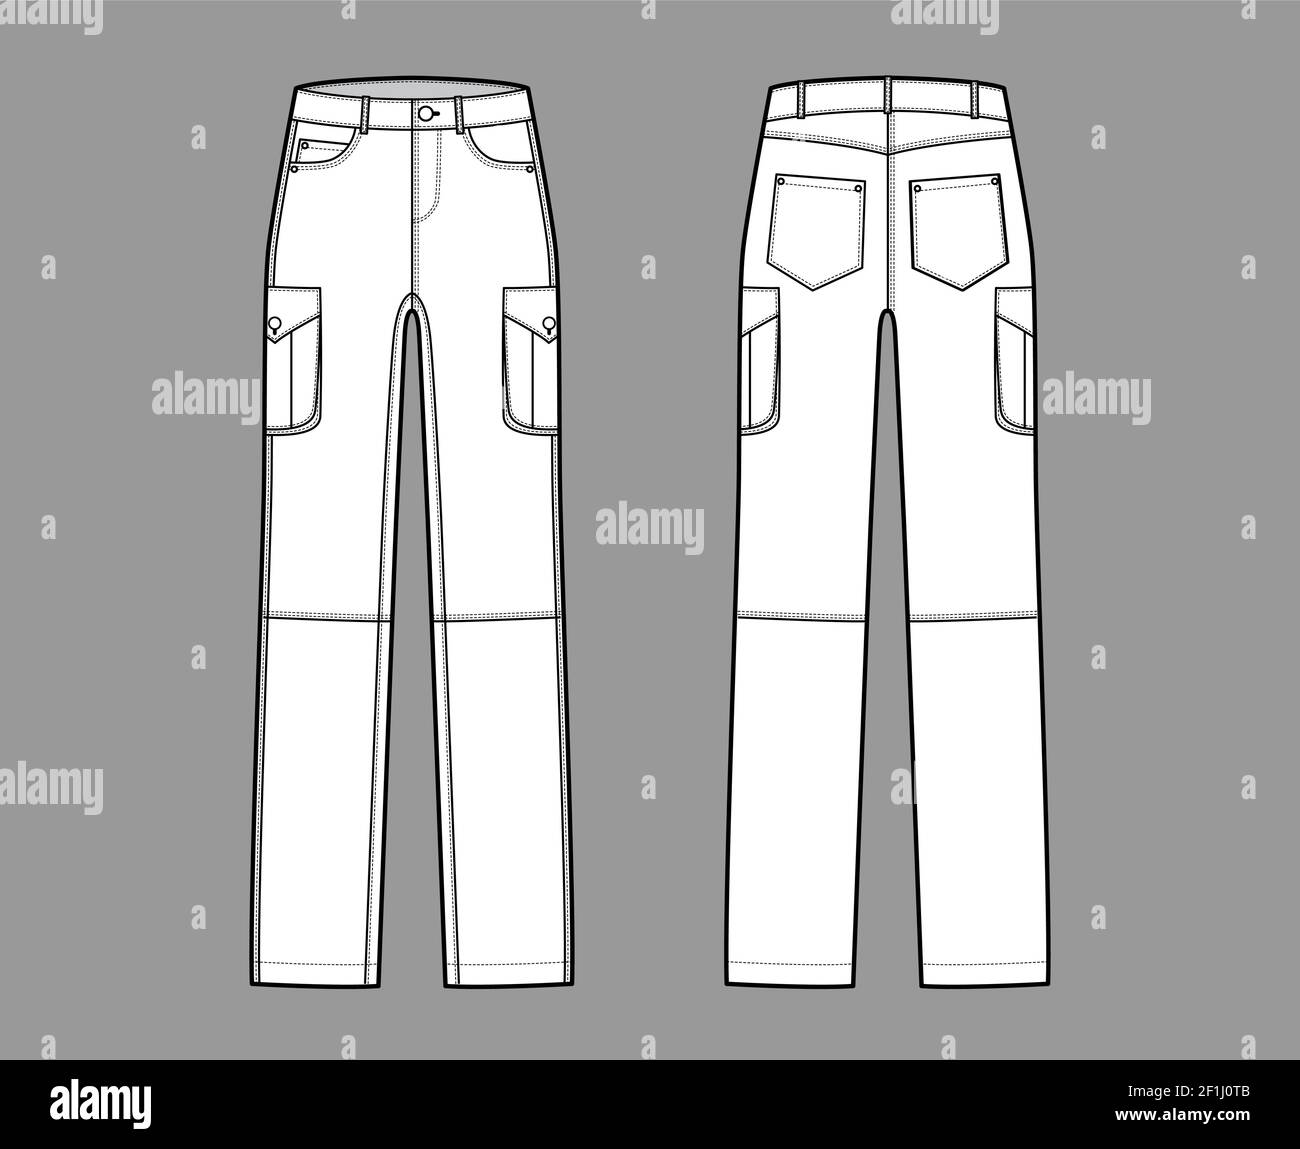 Conjunto de jeans cargo pantalones vaqueros ilustración técnica de moda con  cintura baja, talle, bolsillos, trabillas, largos. Ropa de fondo plano en  la parte delantera de la espalda, blanco, estilo de color.